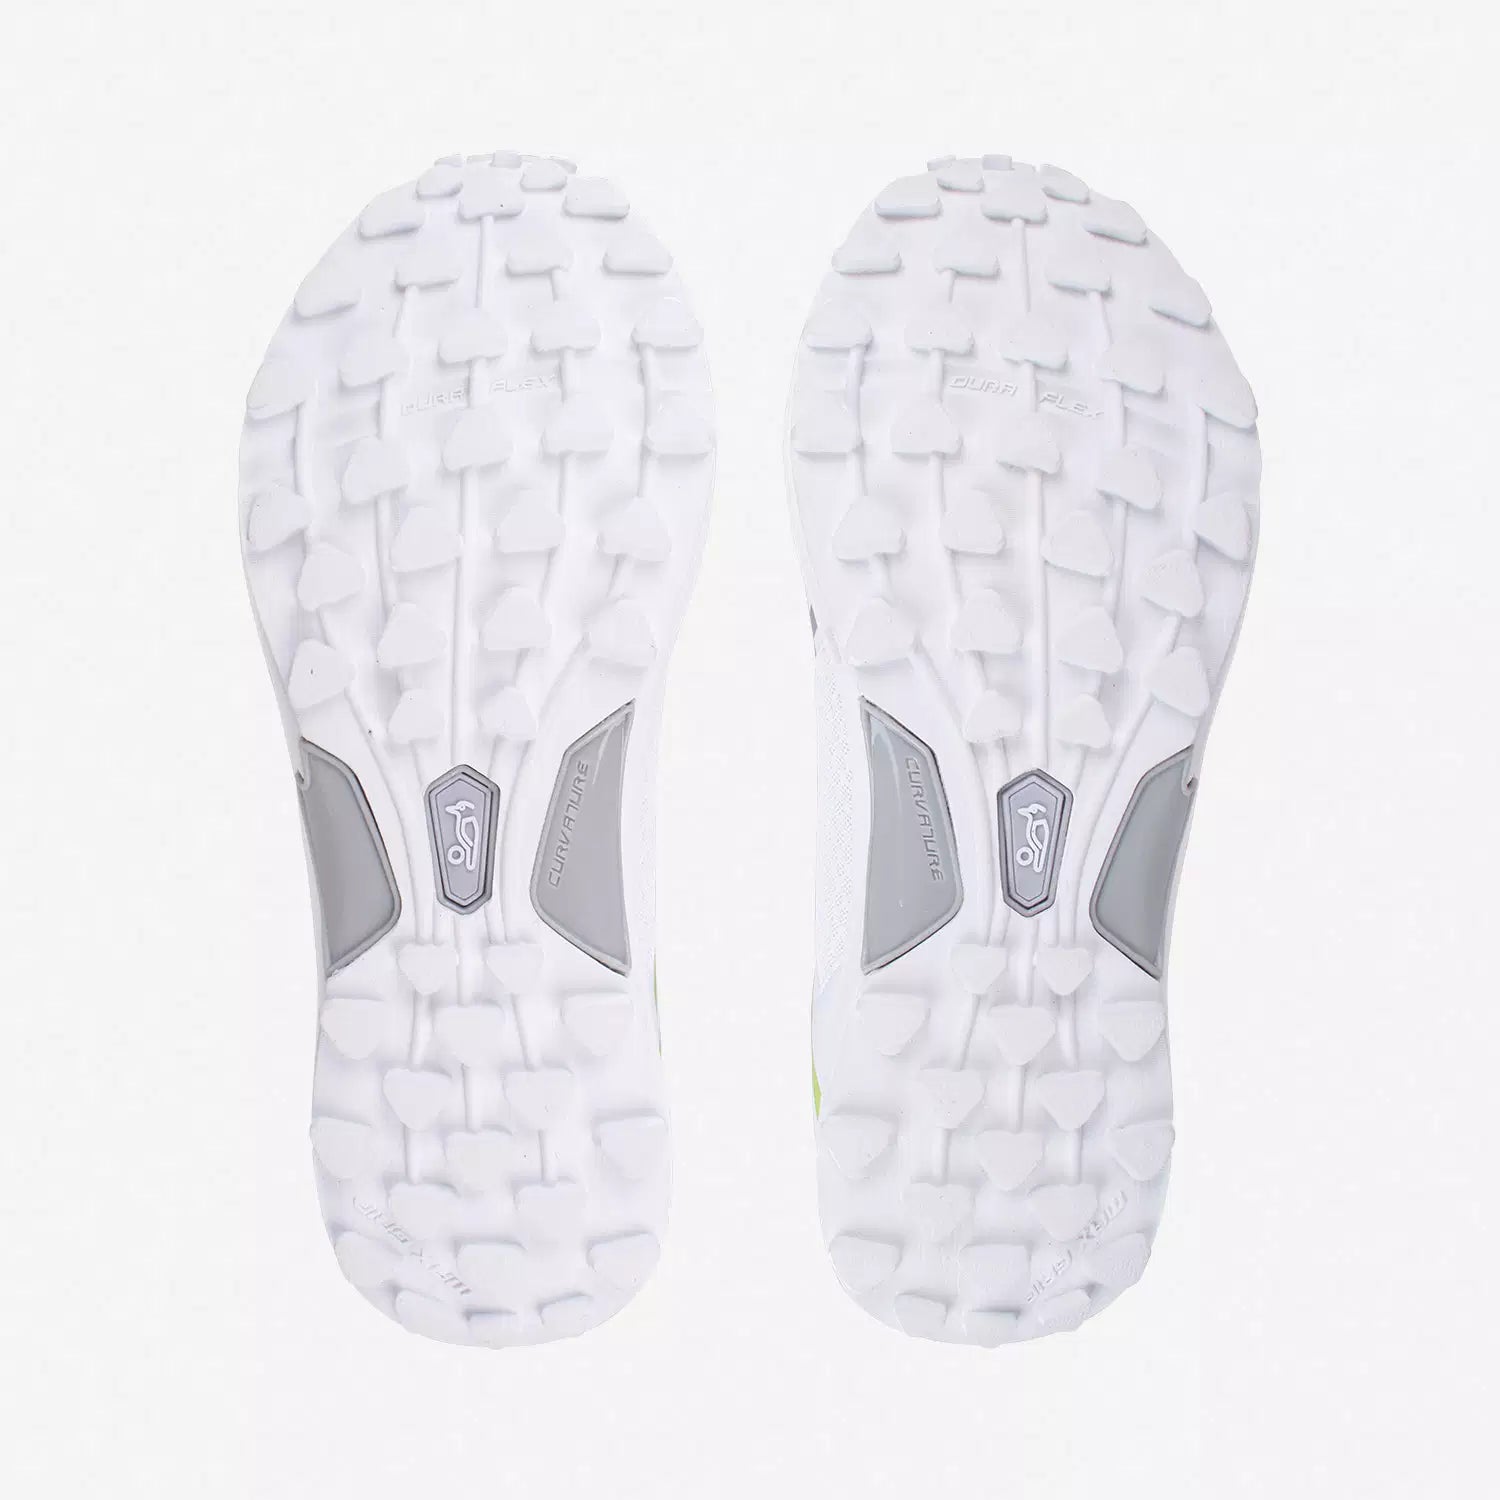 Kookaburra KC 3.0 Rubber Cricket Shoes White/Lime